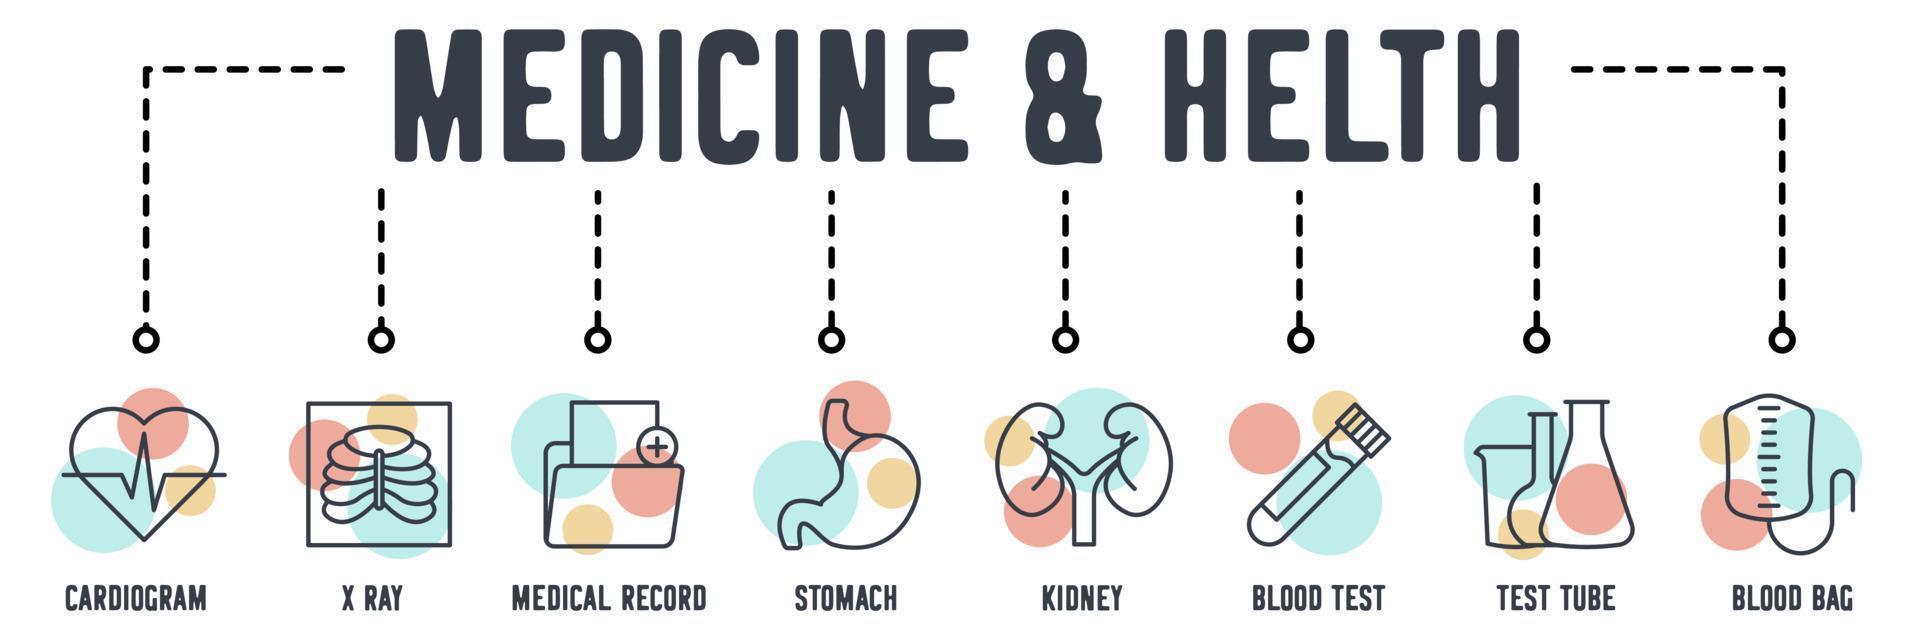 icona web banner di medicina e salute. cardiogramma, raggi X, cartella clinica, stomaco, reni, analisi del sangue, provetta, concetto di illustrazione vettoriale della sacca di sangue.